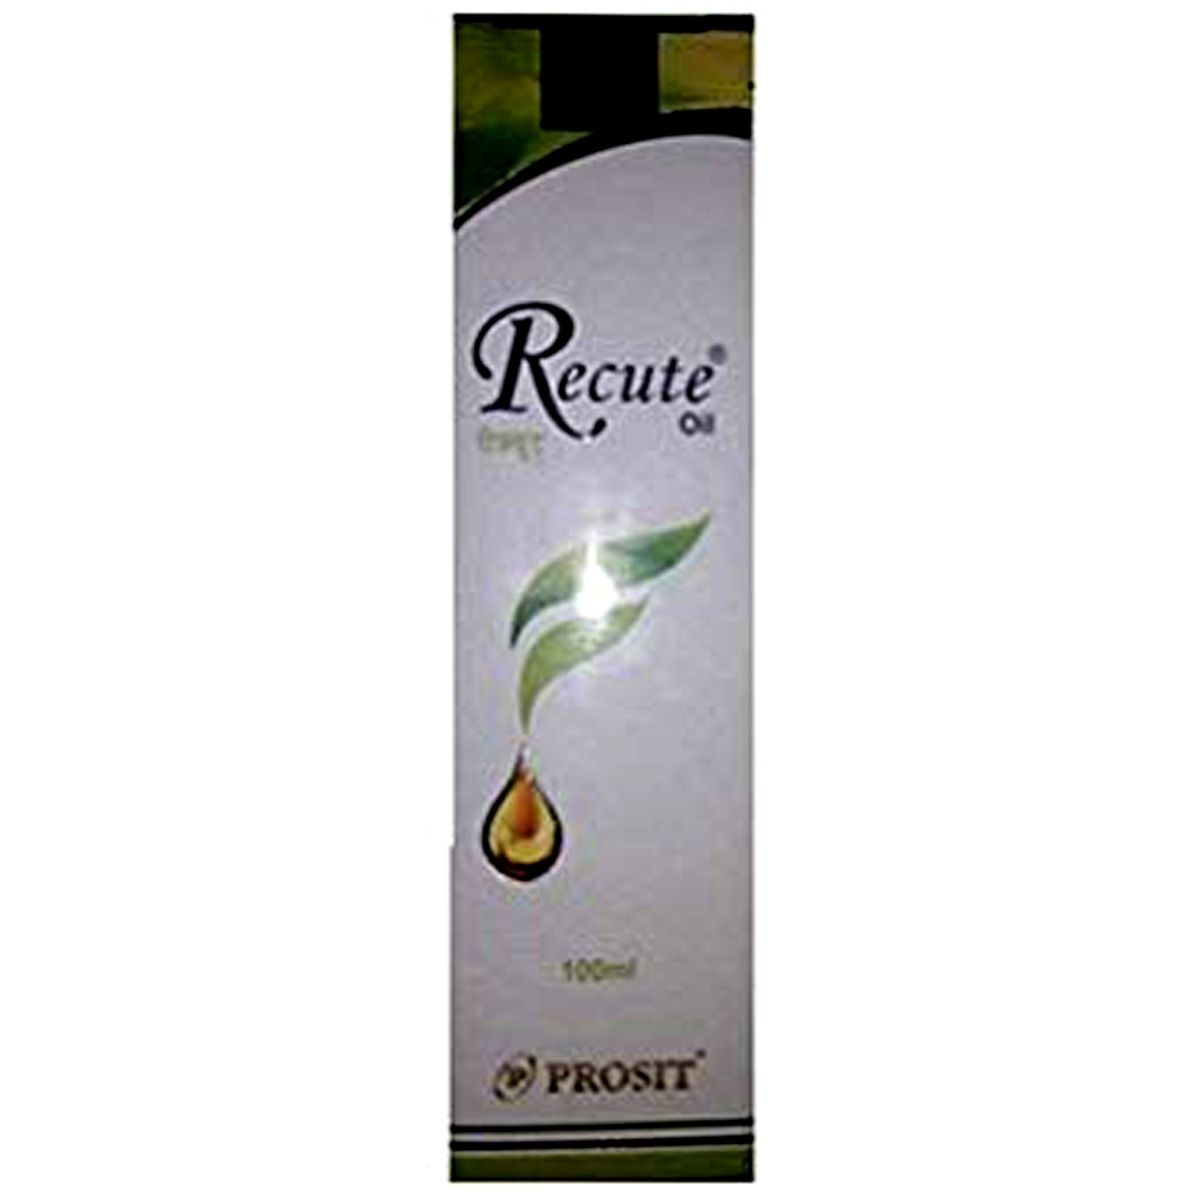 Recute Hair Oil, 100 ml, Pack of 1 